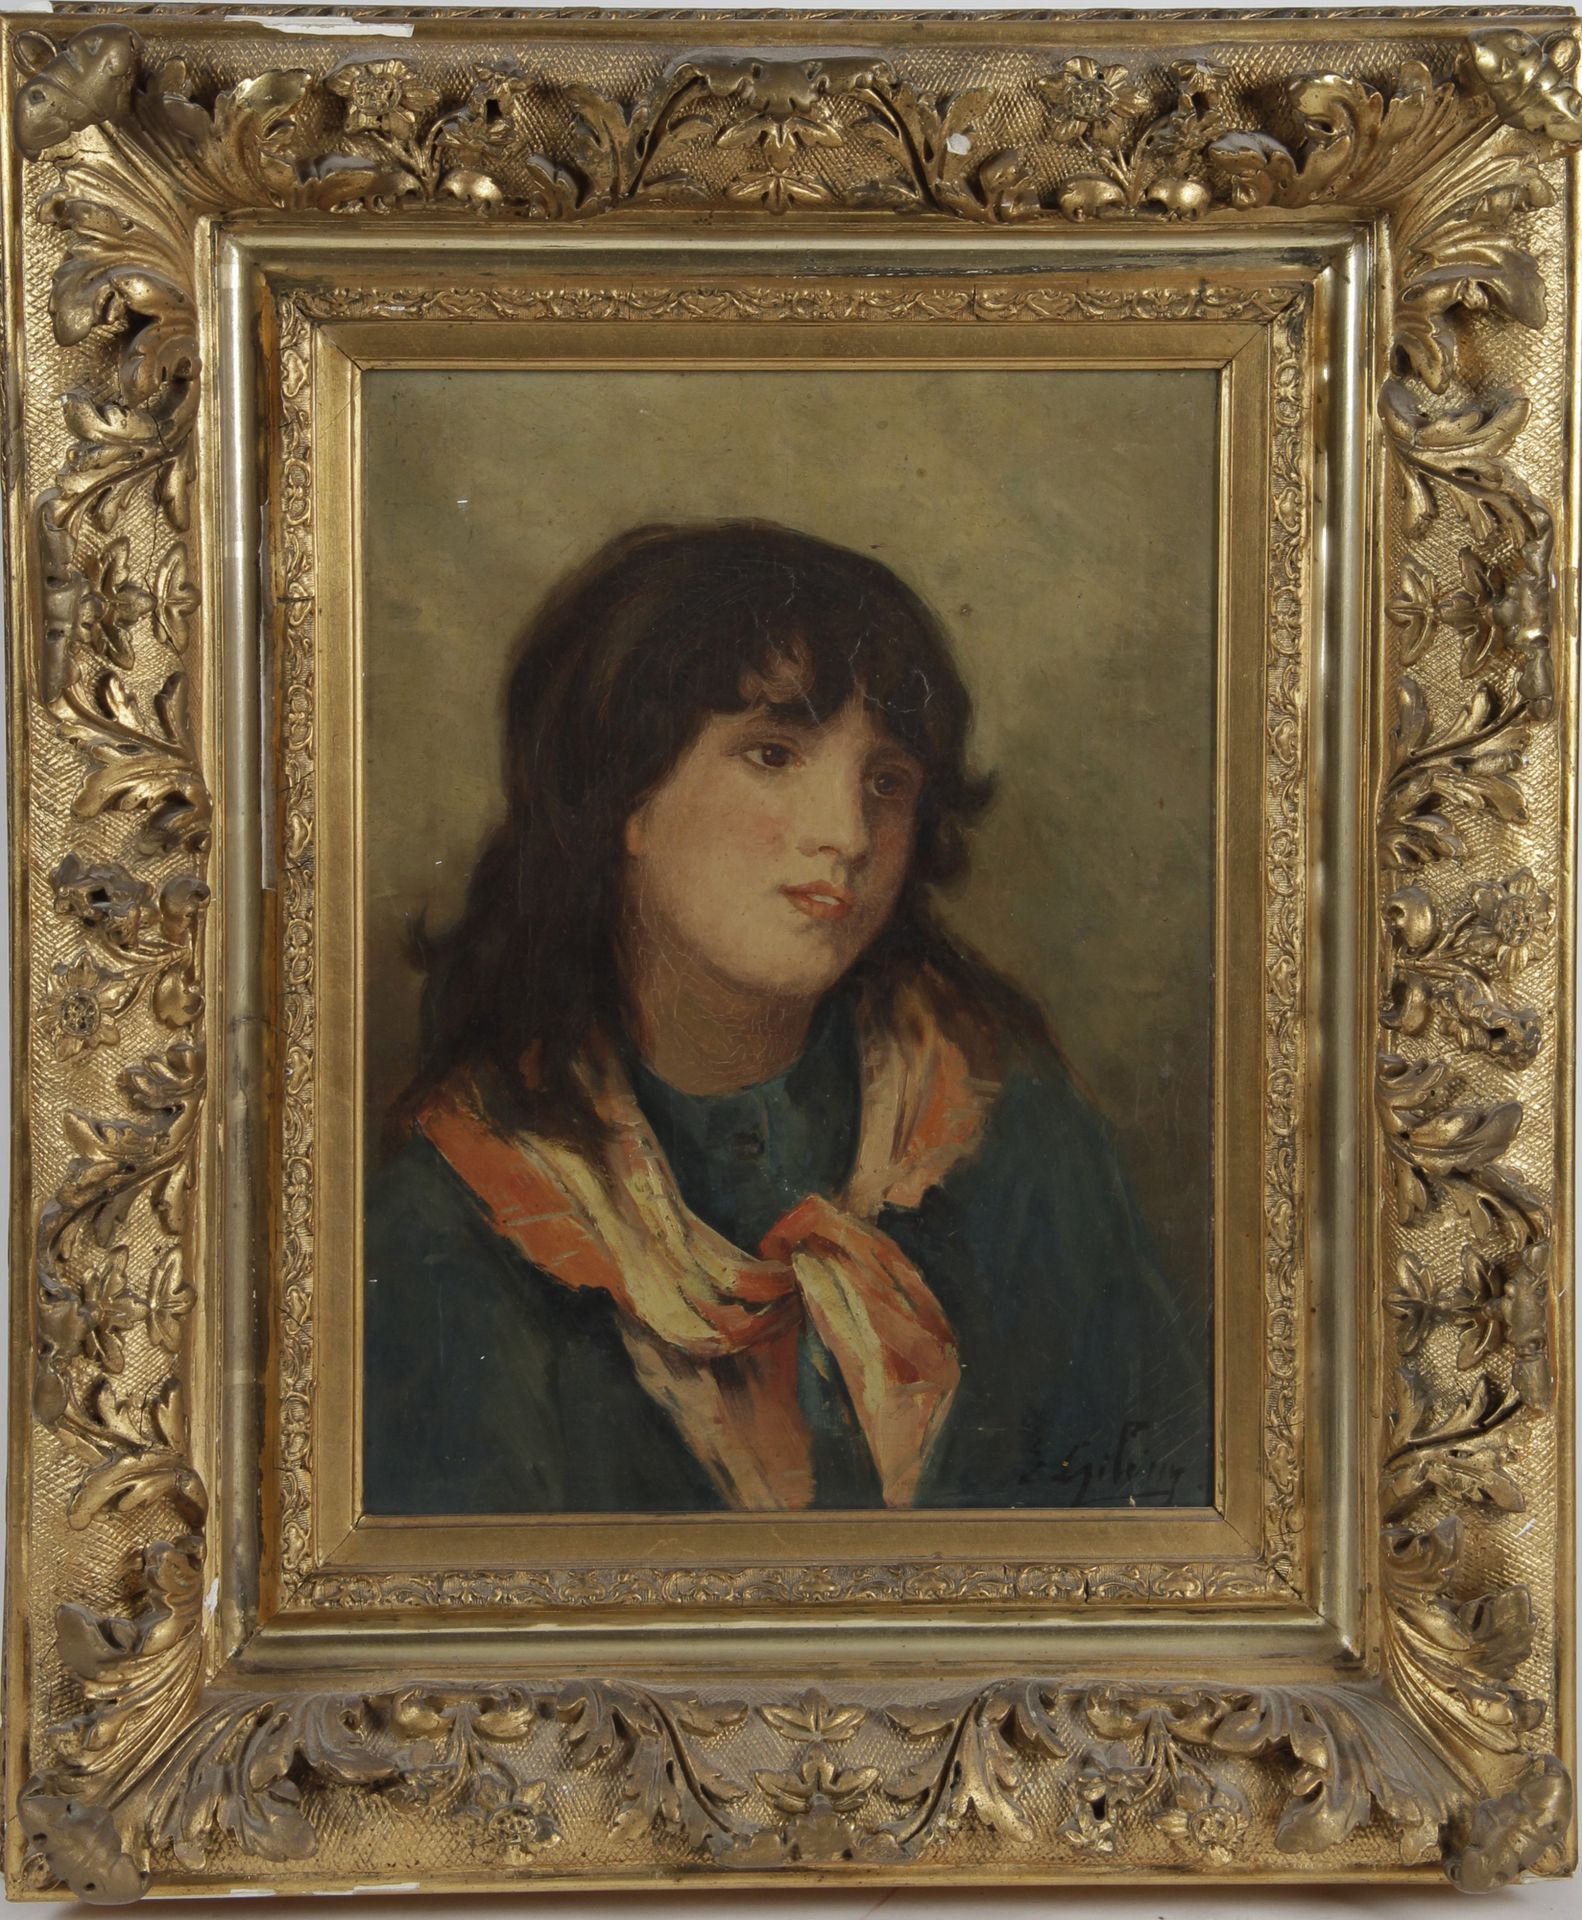 Null paciente italiano del siglo xix

"Retrato de una joven", óleo sobre lienzo,&hellip;